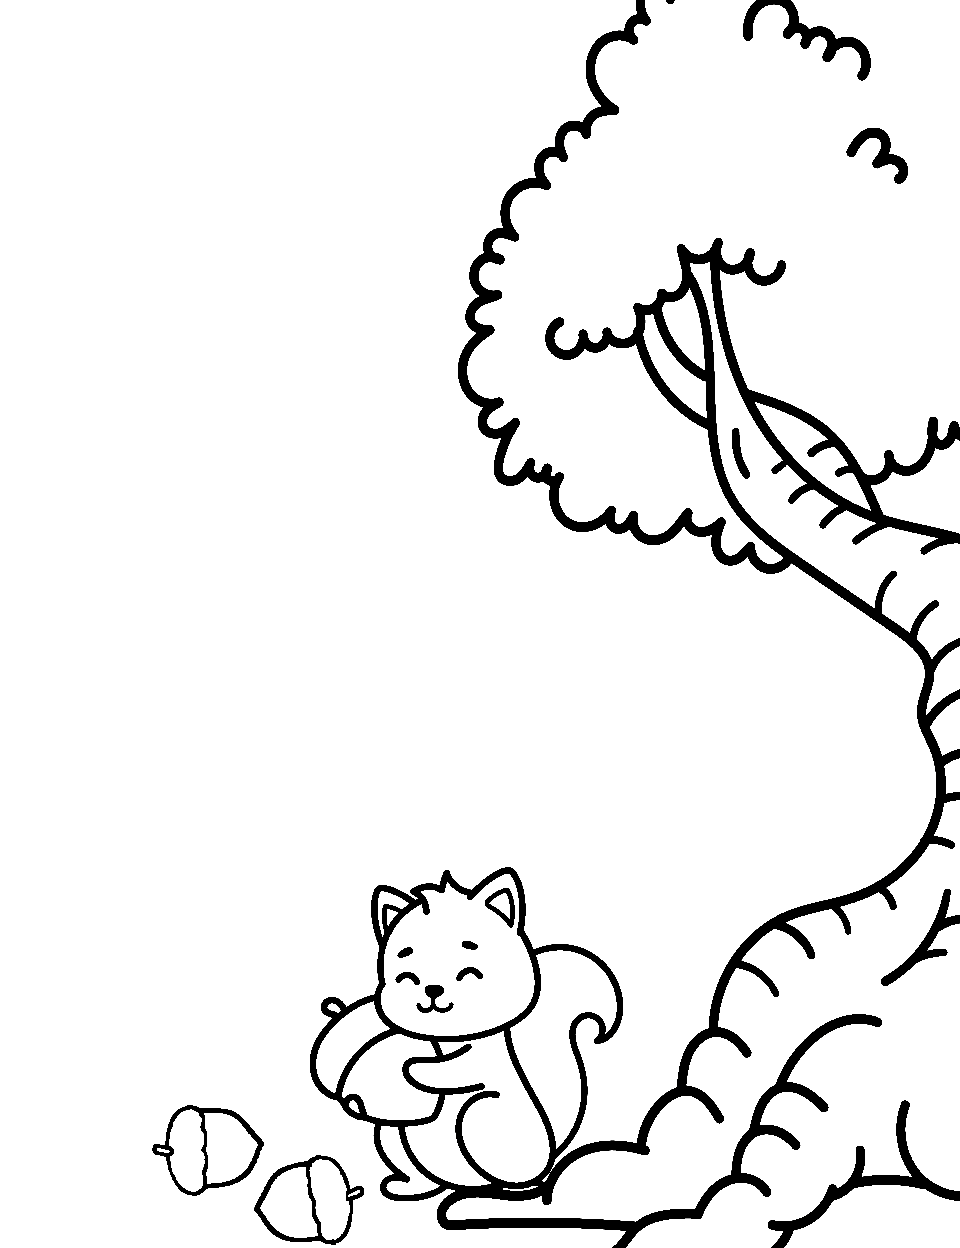 Acorn Adventures Coloring Page - Squirrel gathering acorns under a tree.